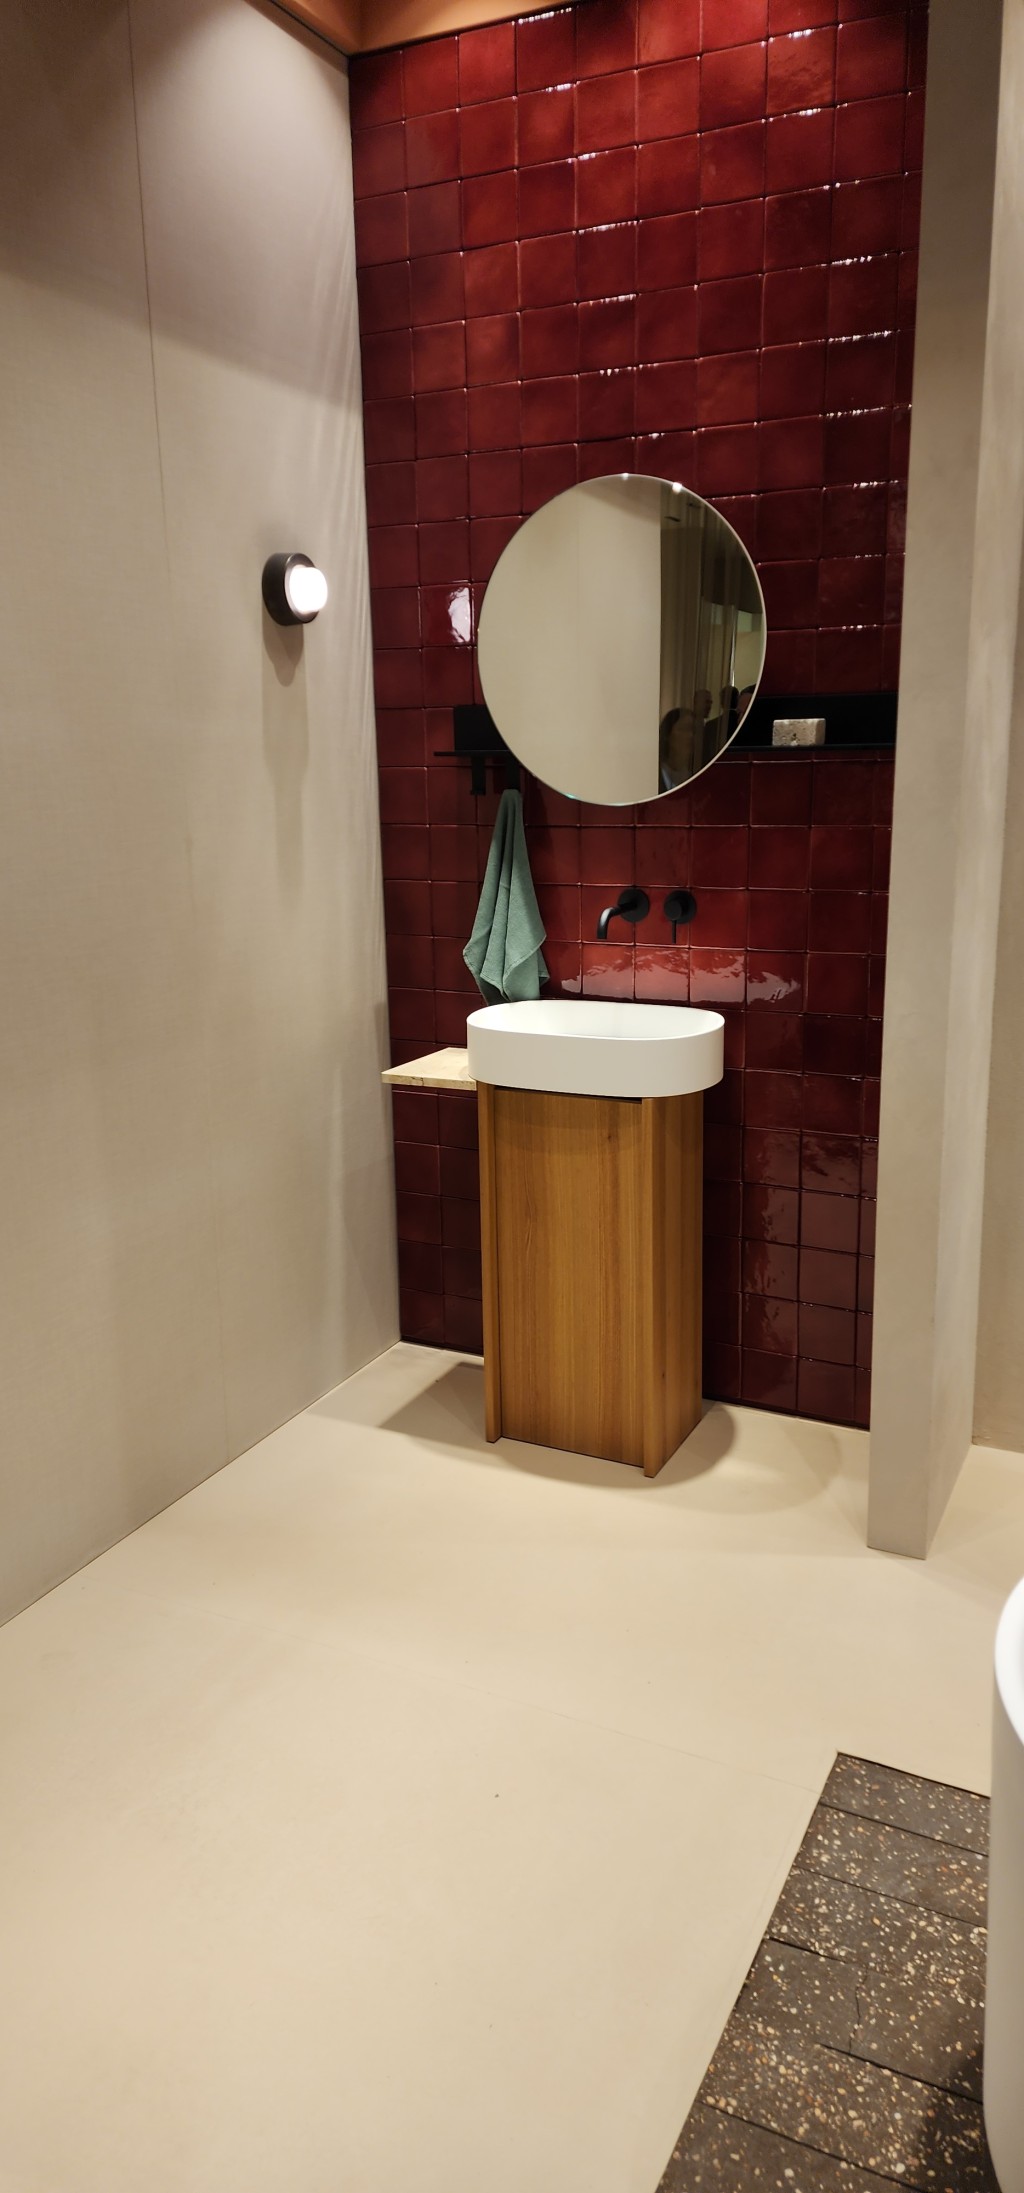 A bathroom with red tiles at Salone Internazionale del Mobile di Milano